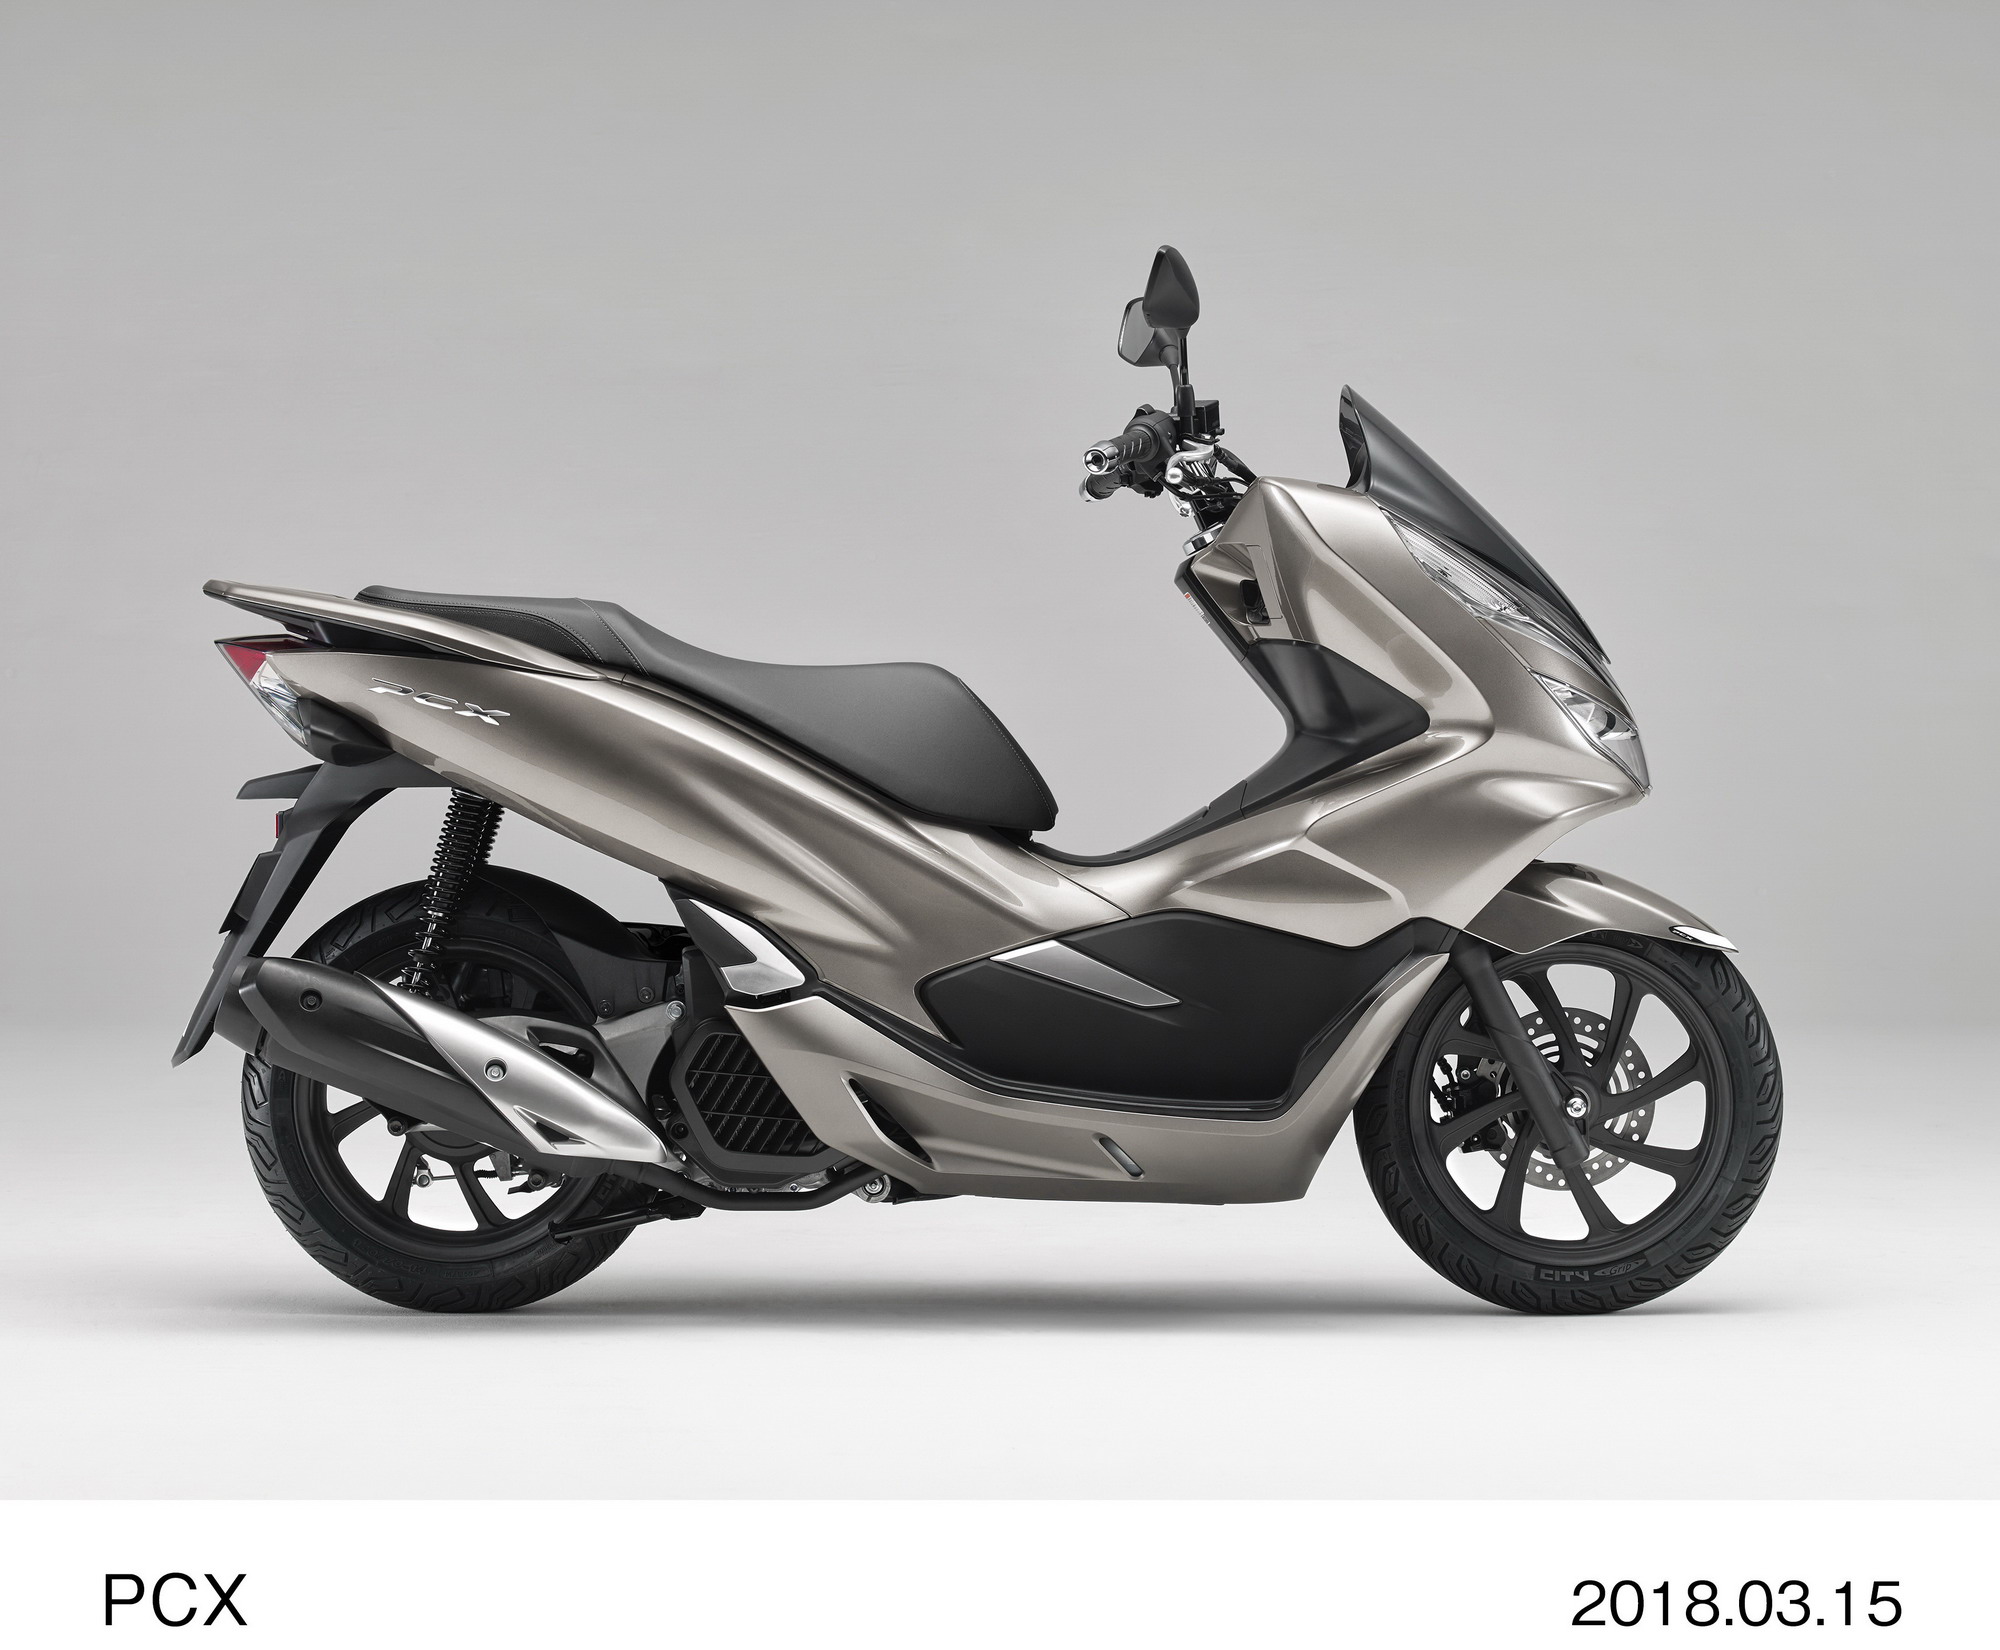 Honda 向本土市场发布新一代的pcx 新车新品 资讯中心 全球摩托车网移动版 摩托车品牌 摩托车报价 摩托车之家 摩托车门户